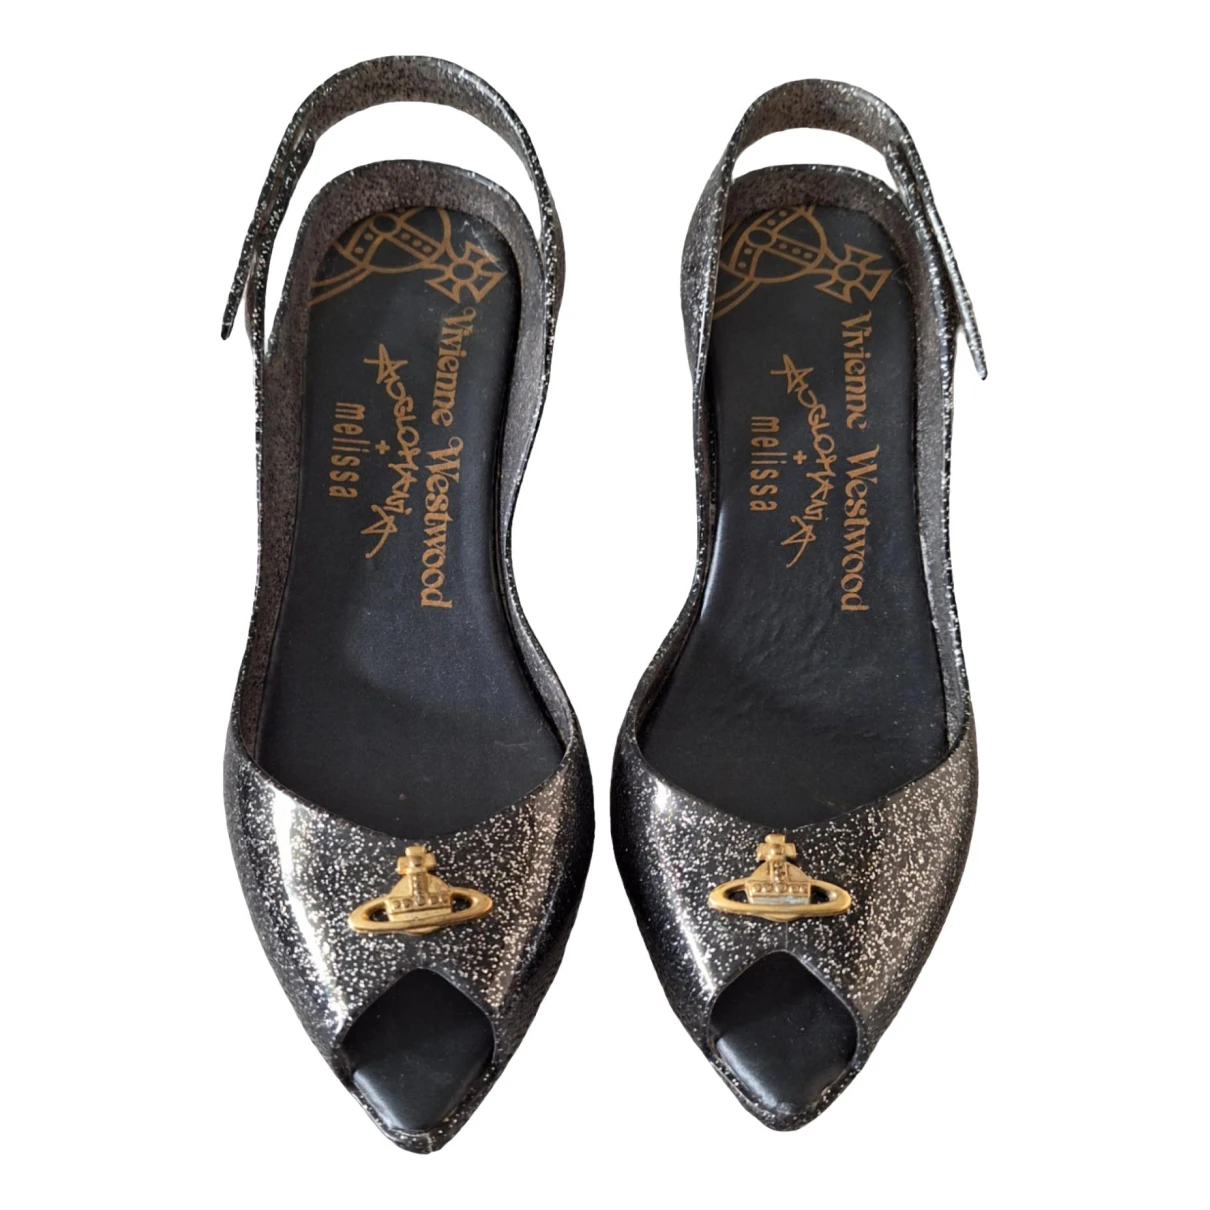 Pre-owned Vivienne Westwood Anglomania Heels In Black